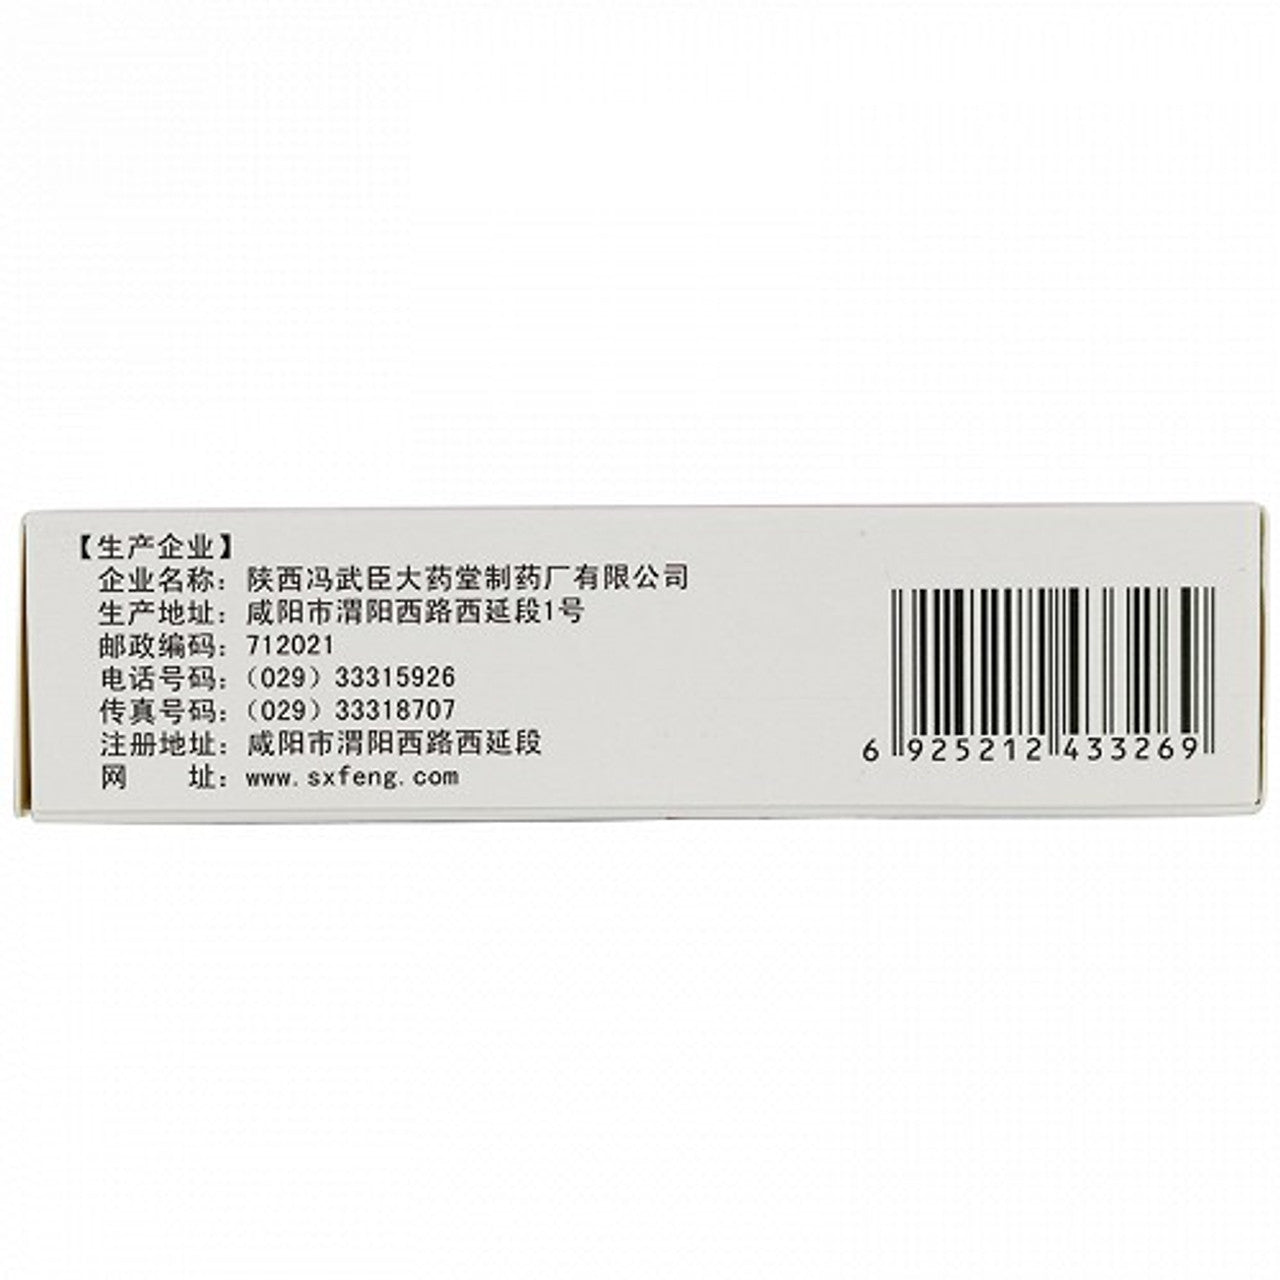 China Herb. External Use Ointment. Kangfu Ling Yaogao or Kangfu Ling Ointment for Vaginitis. Kang Fu Ling Yao Gao